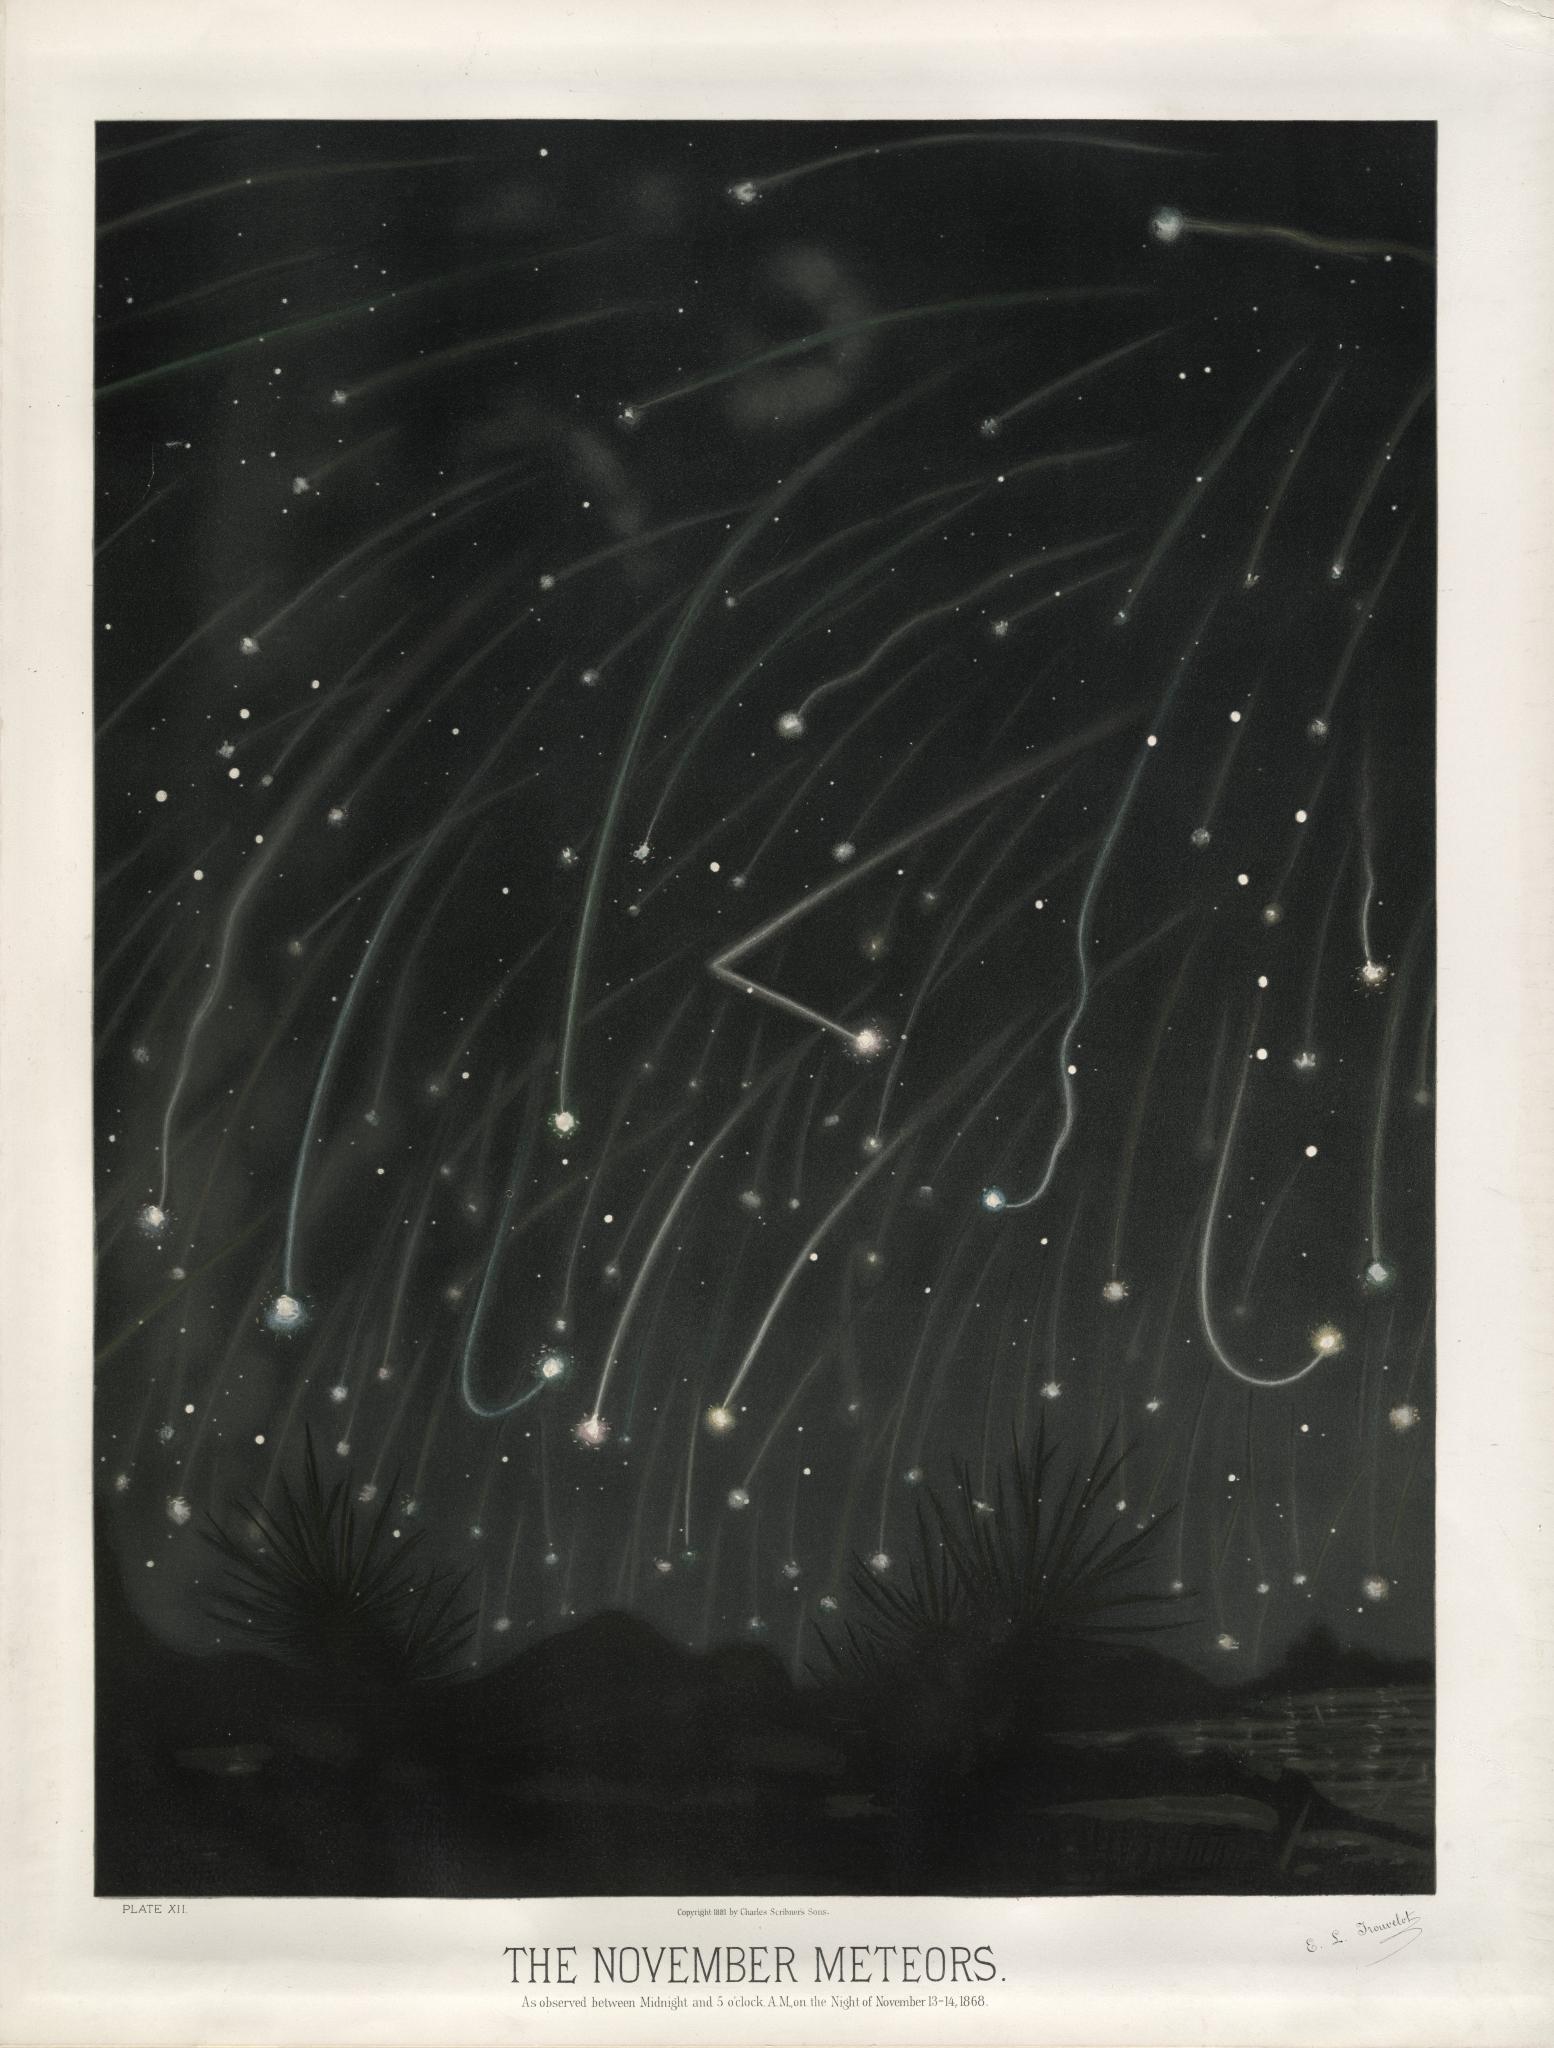 Leonid meteors illustration